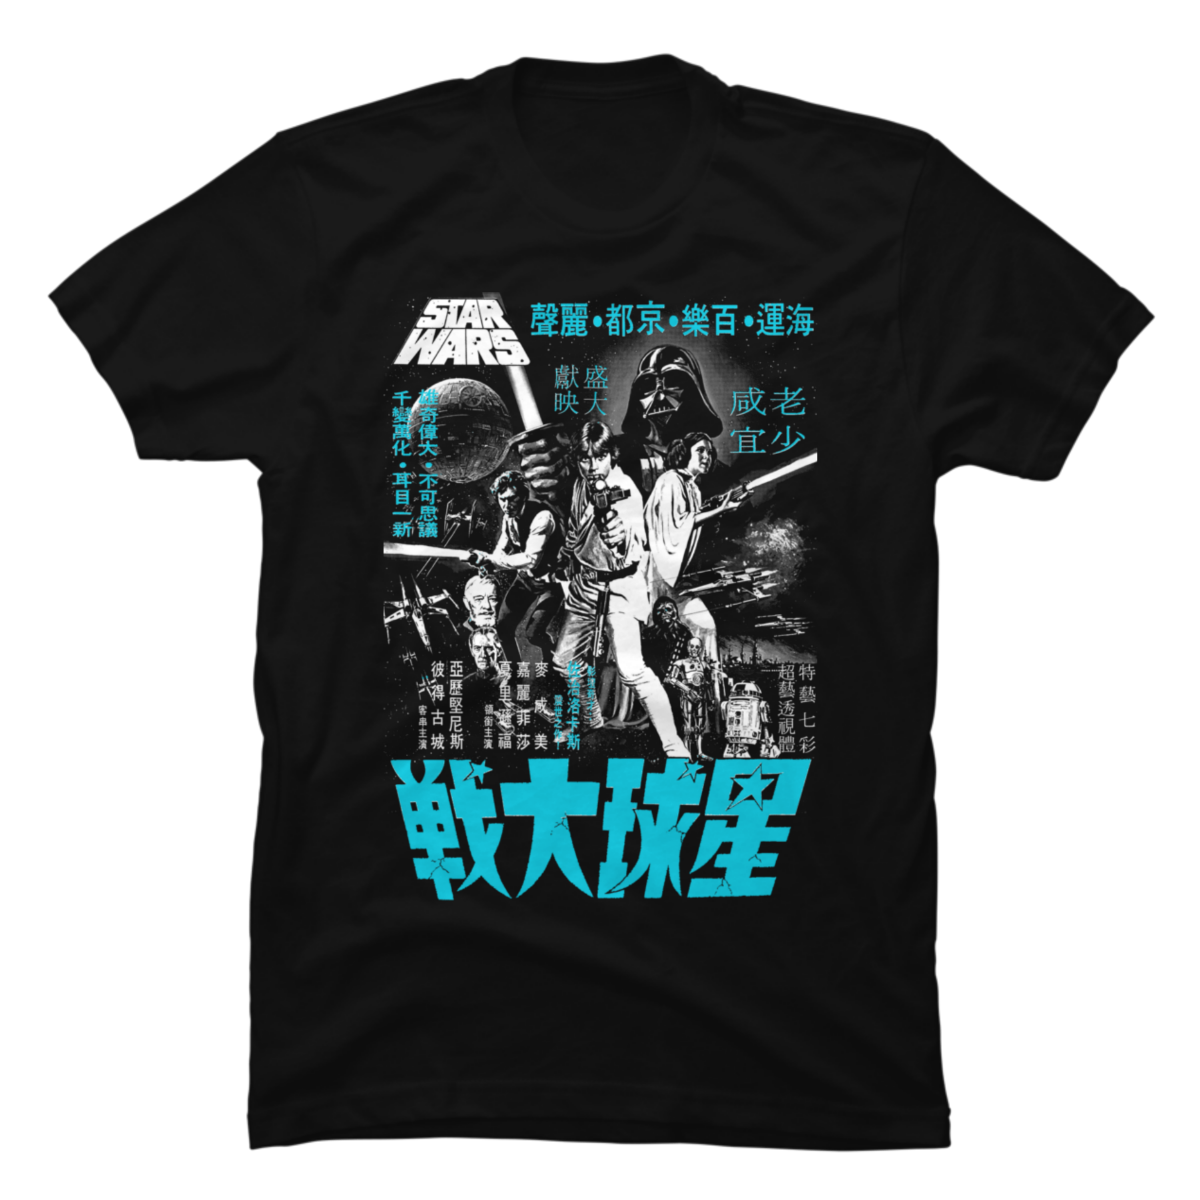 star wars shirt japanese